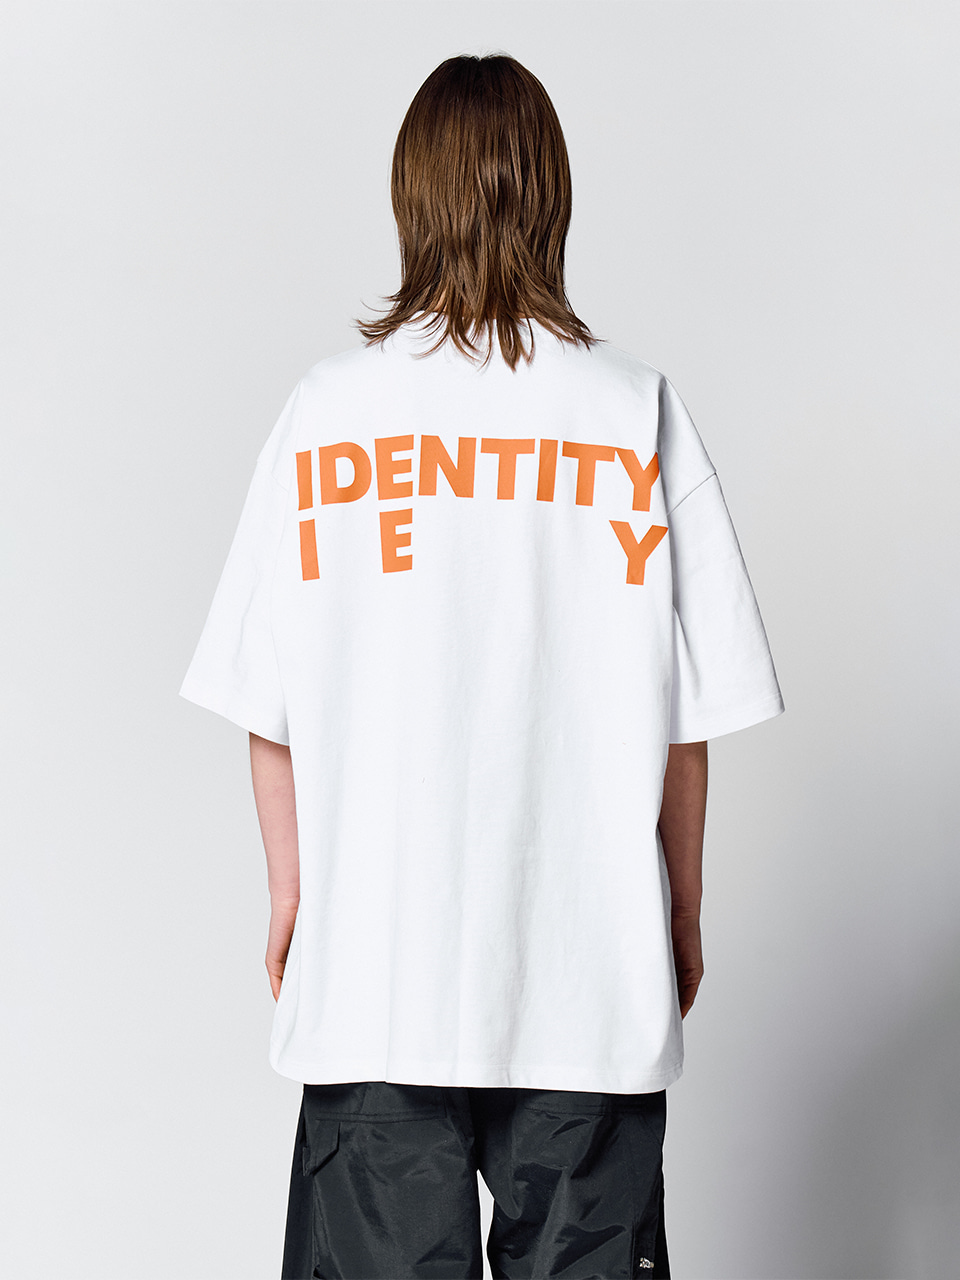 IEY - IDENTITY BACK LOGO T-SHIRT White/Orange